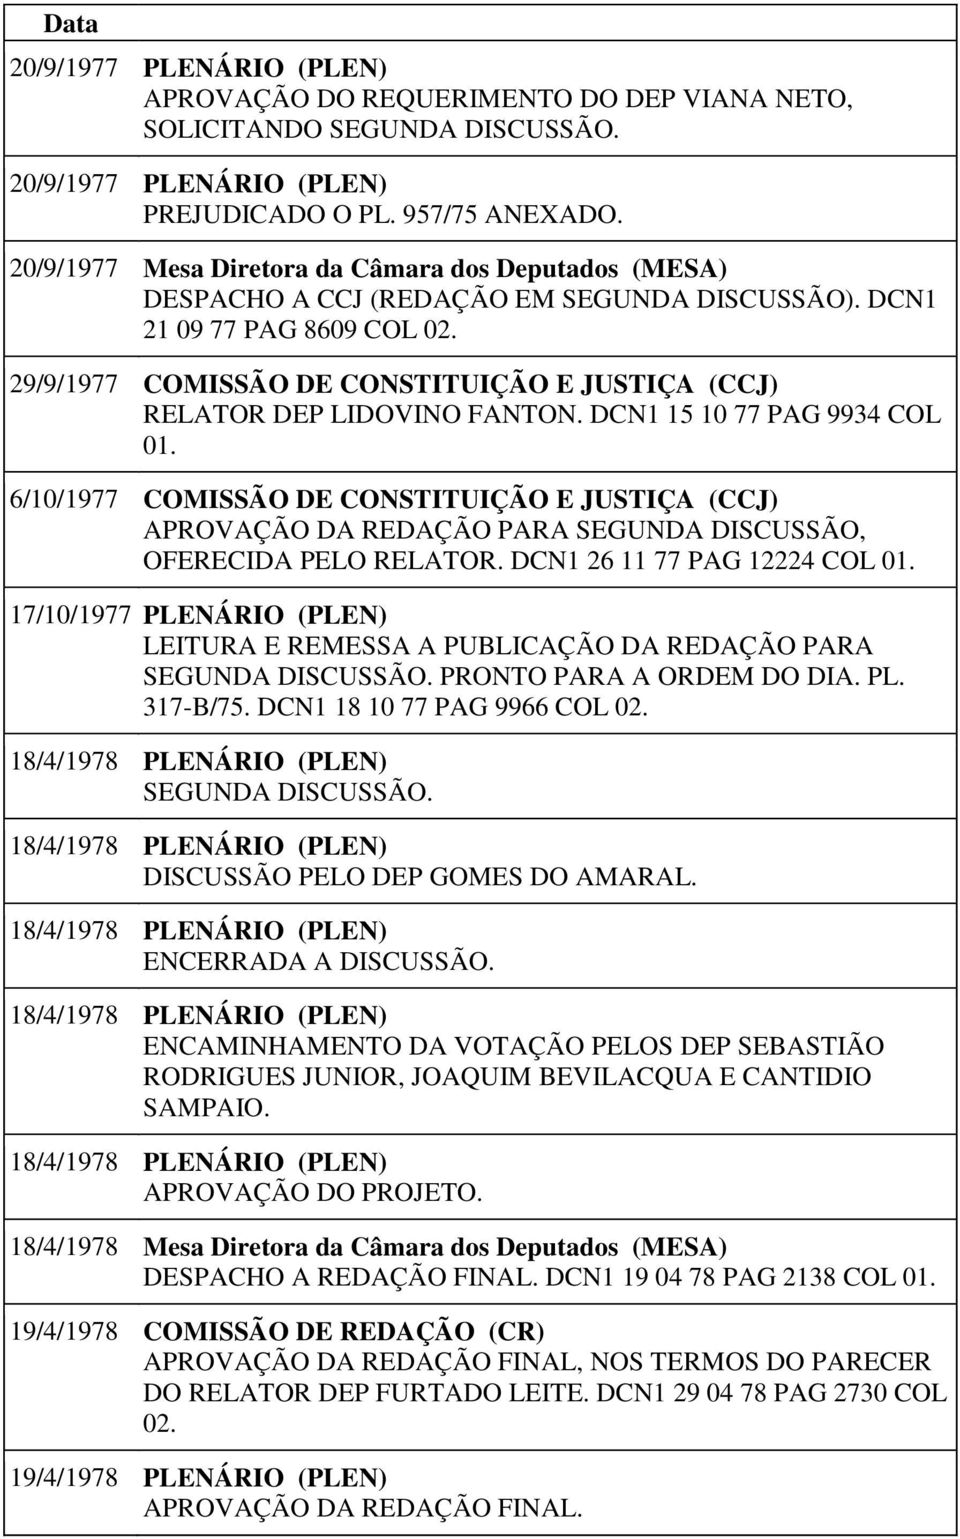 29/9/1977 COMISSÃO DE CONSTITUIÇÃO E JUSTIÇA (CCJ) RELATOR DEP LIDOVINO FANTON. DCN1 15 10 77 PAG 9934 COL 01.